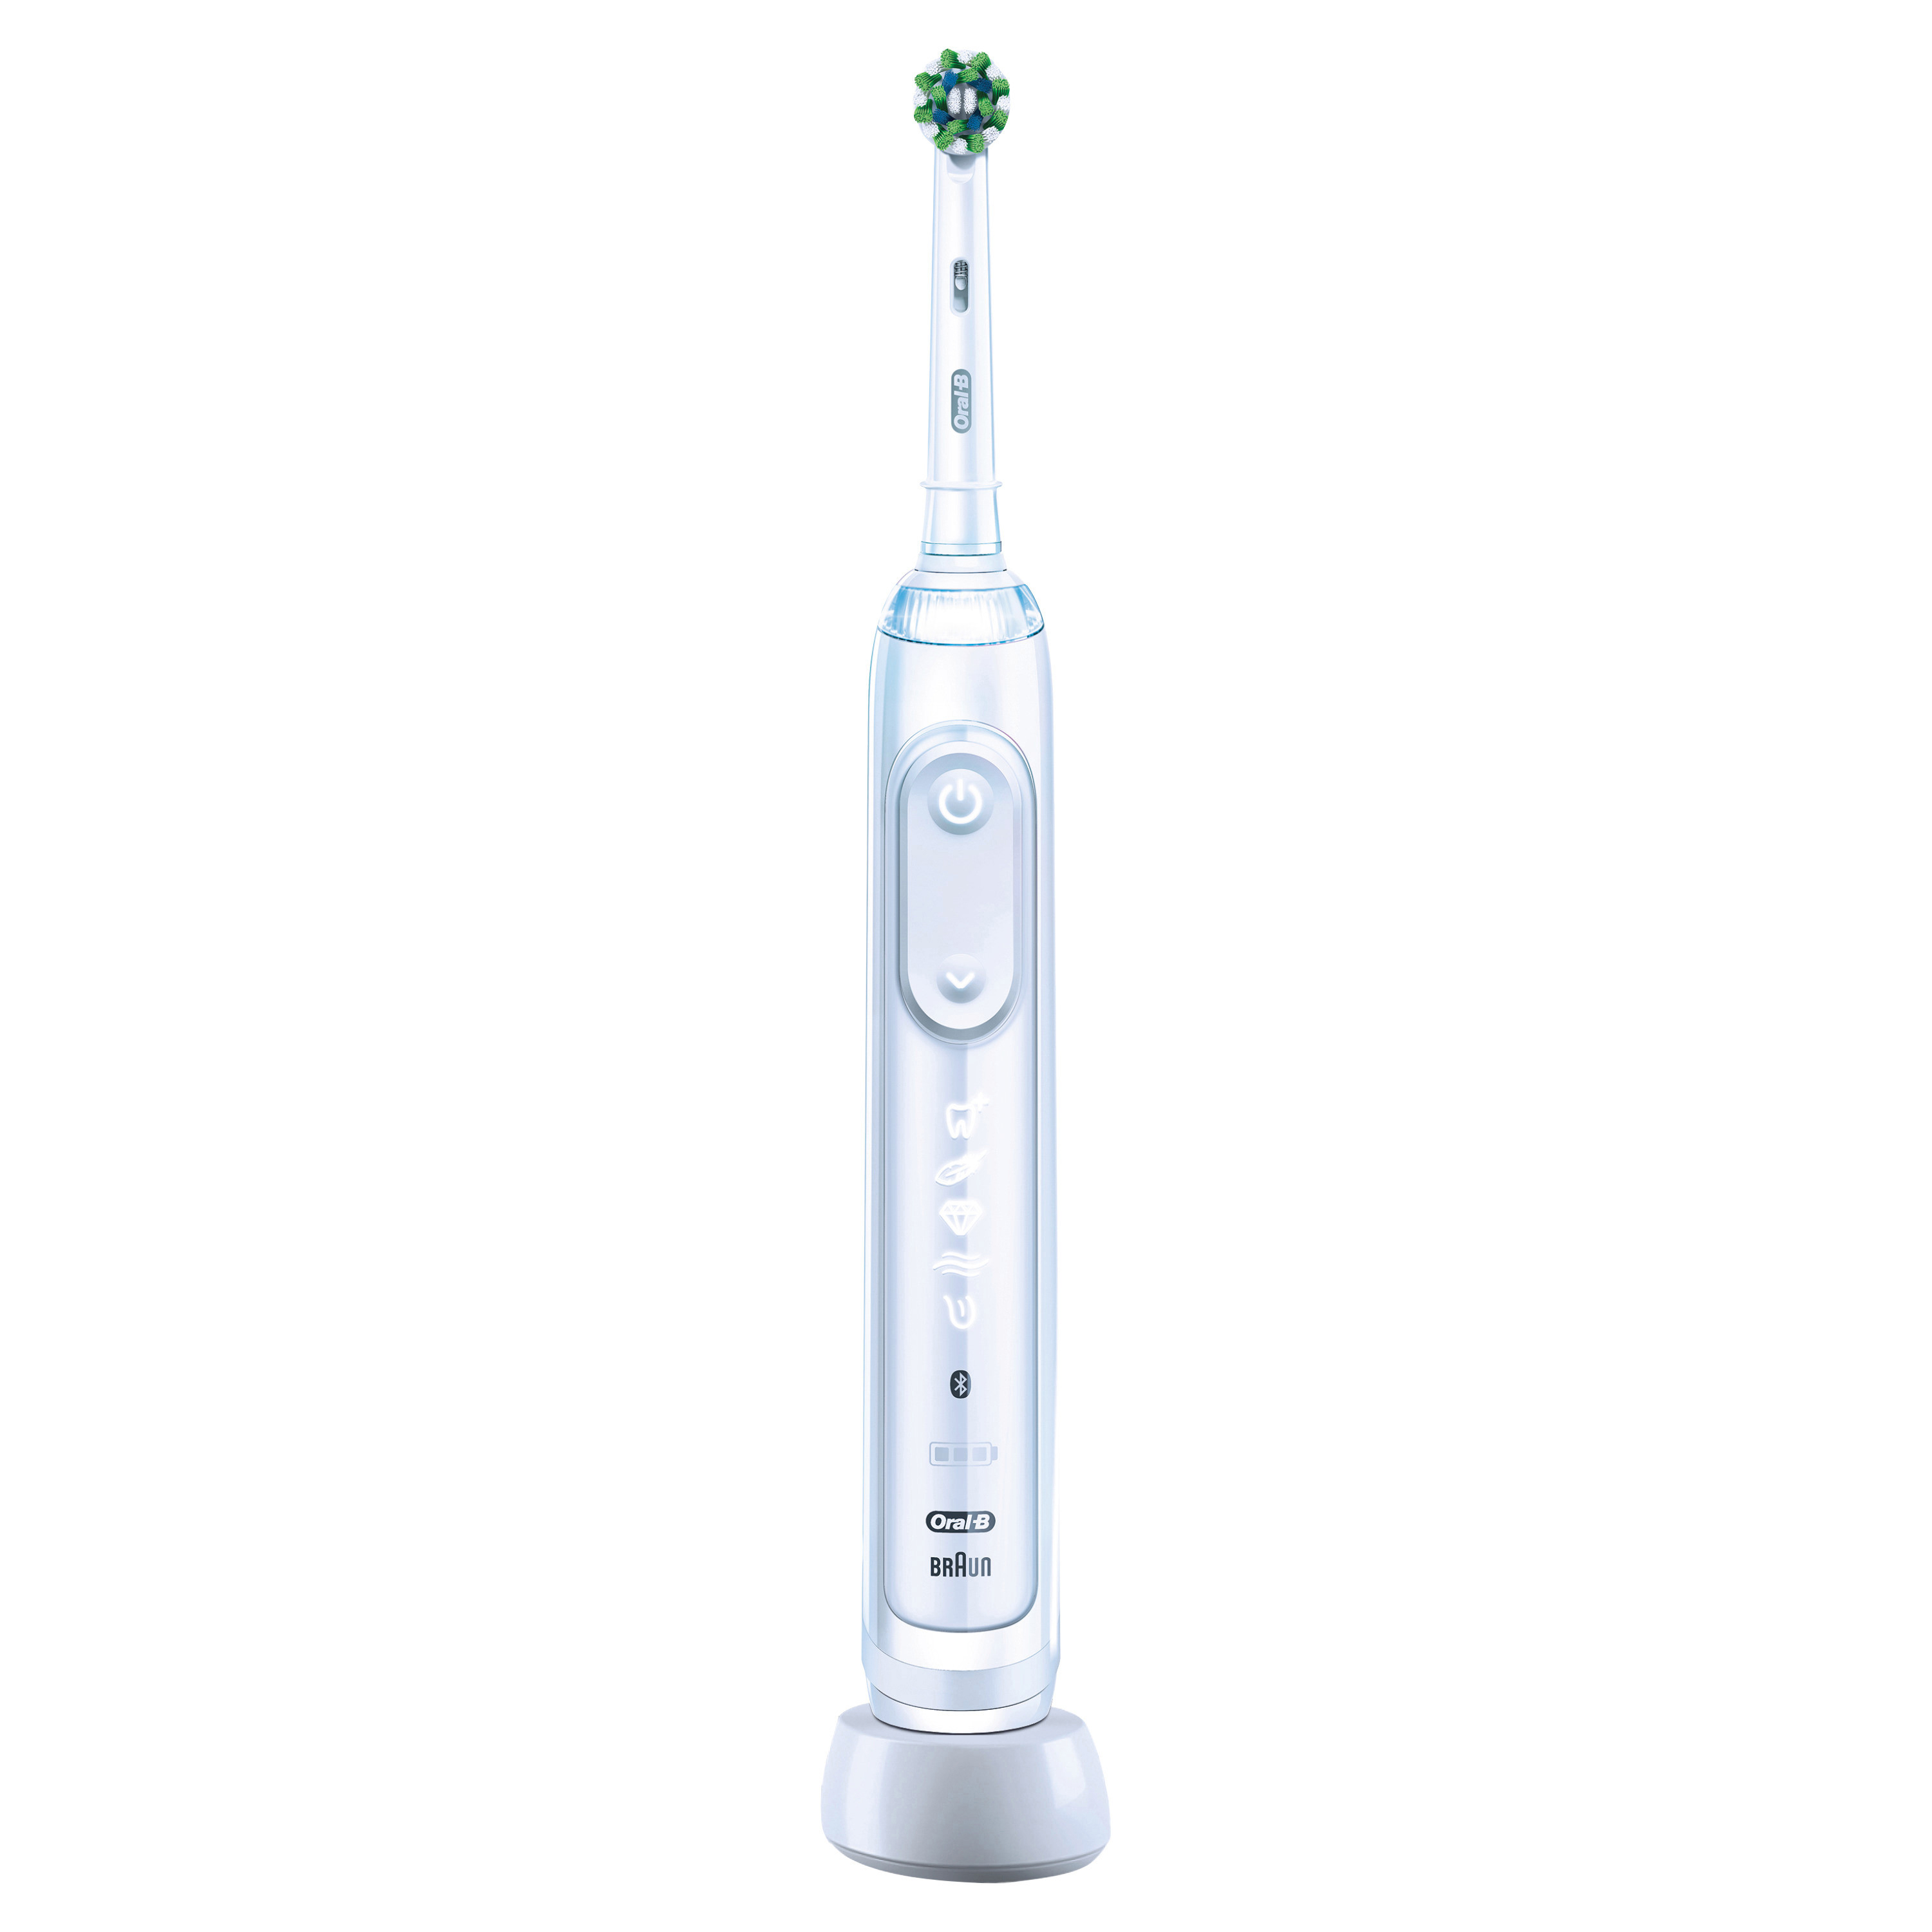 ORAL-B Genius X Elektrische Zahnbürste Weiß